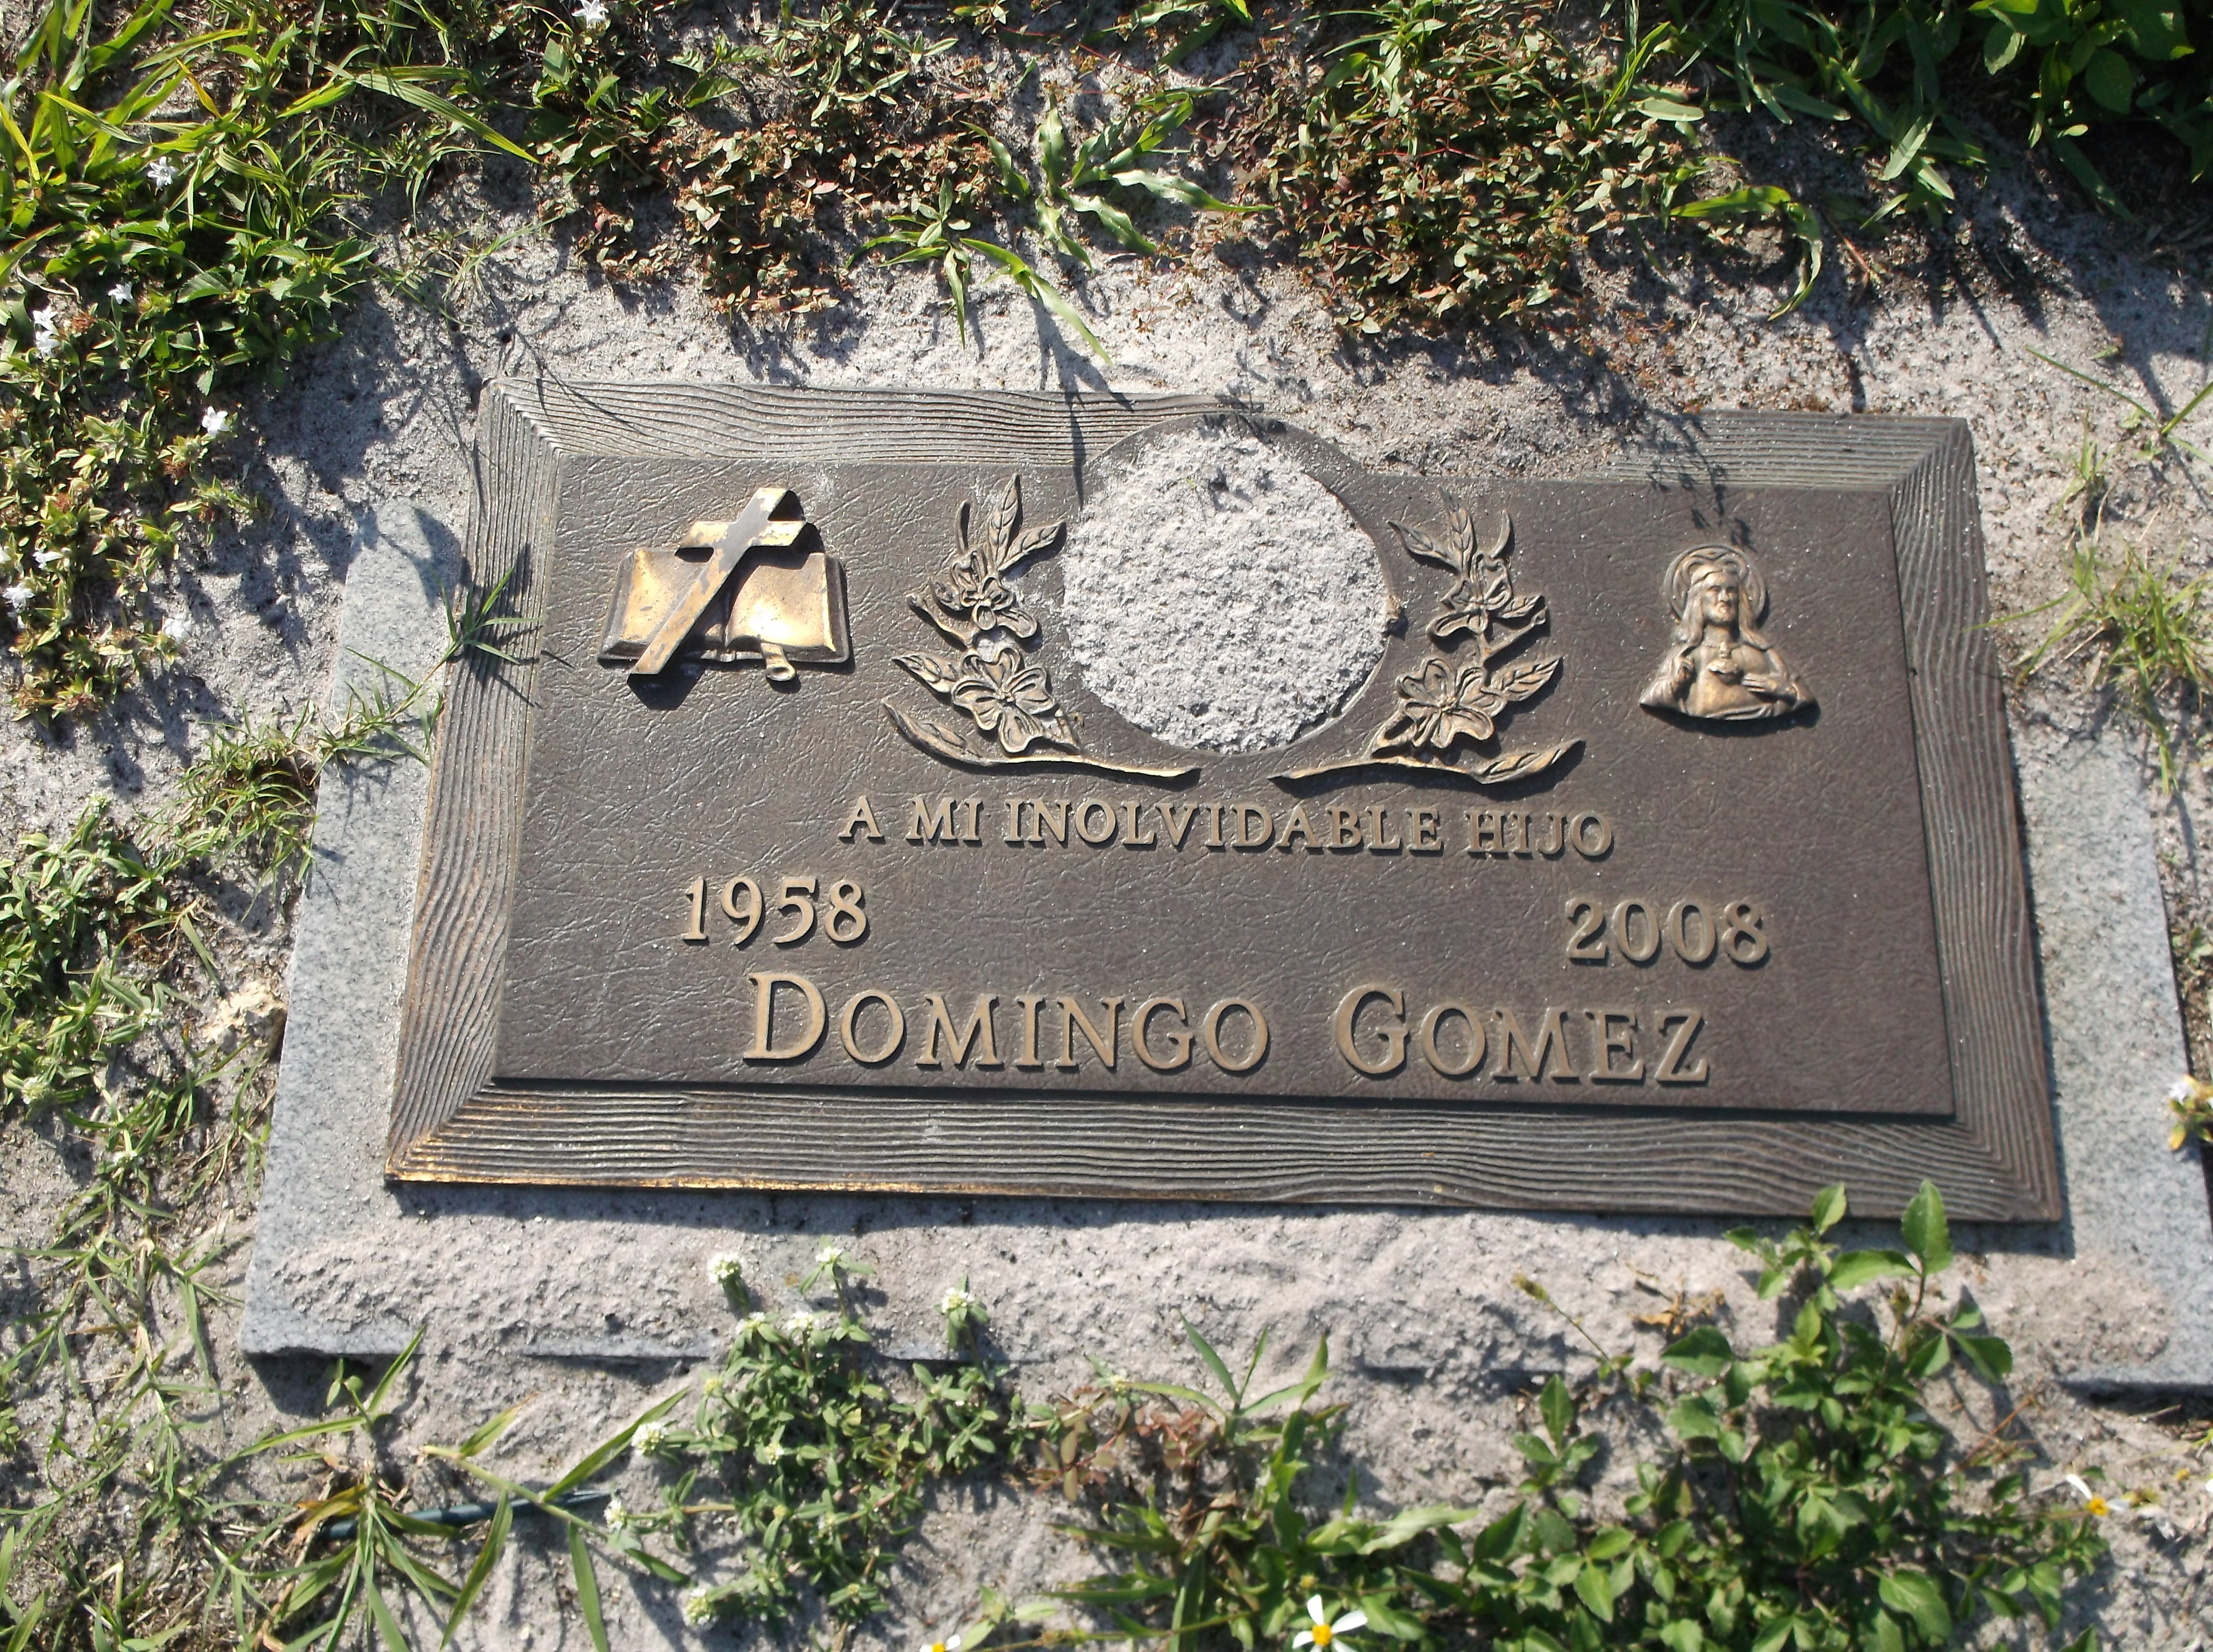 Domingo Gomez